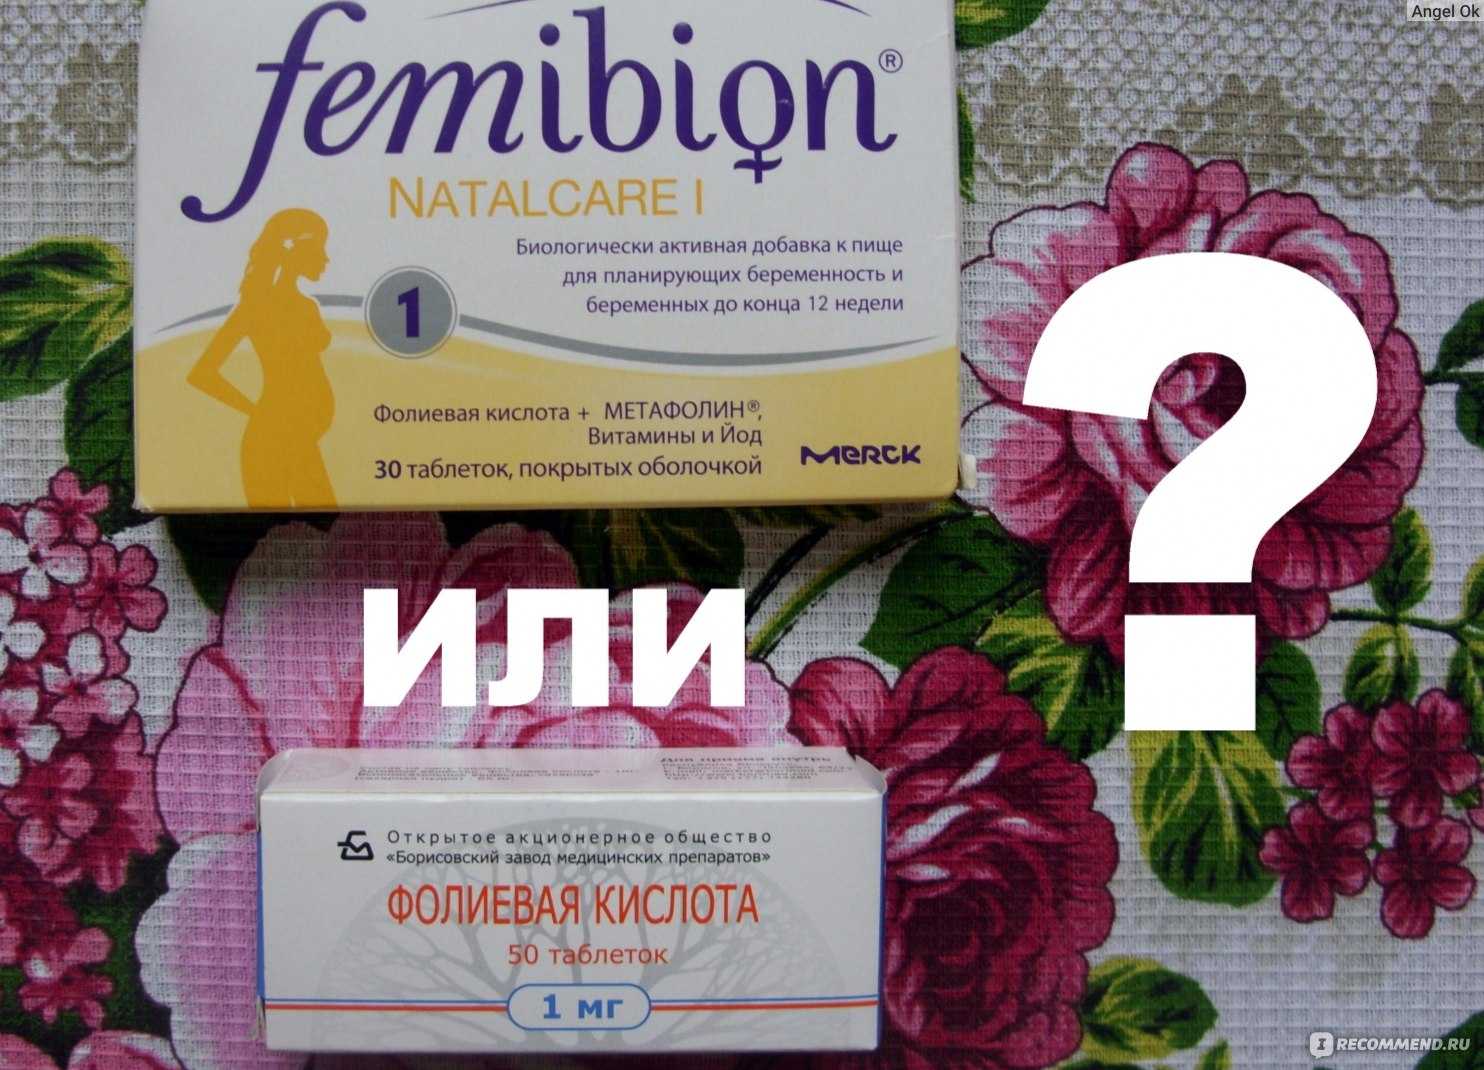 Витамины аевит: можно ли его пить женщинам при планировании и во время беременности?